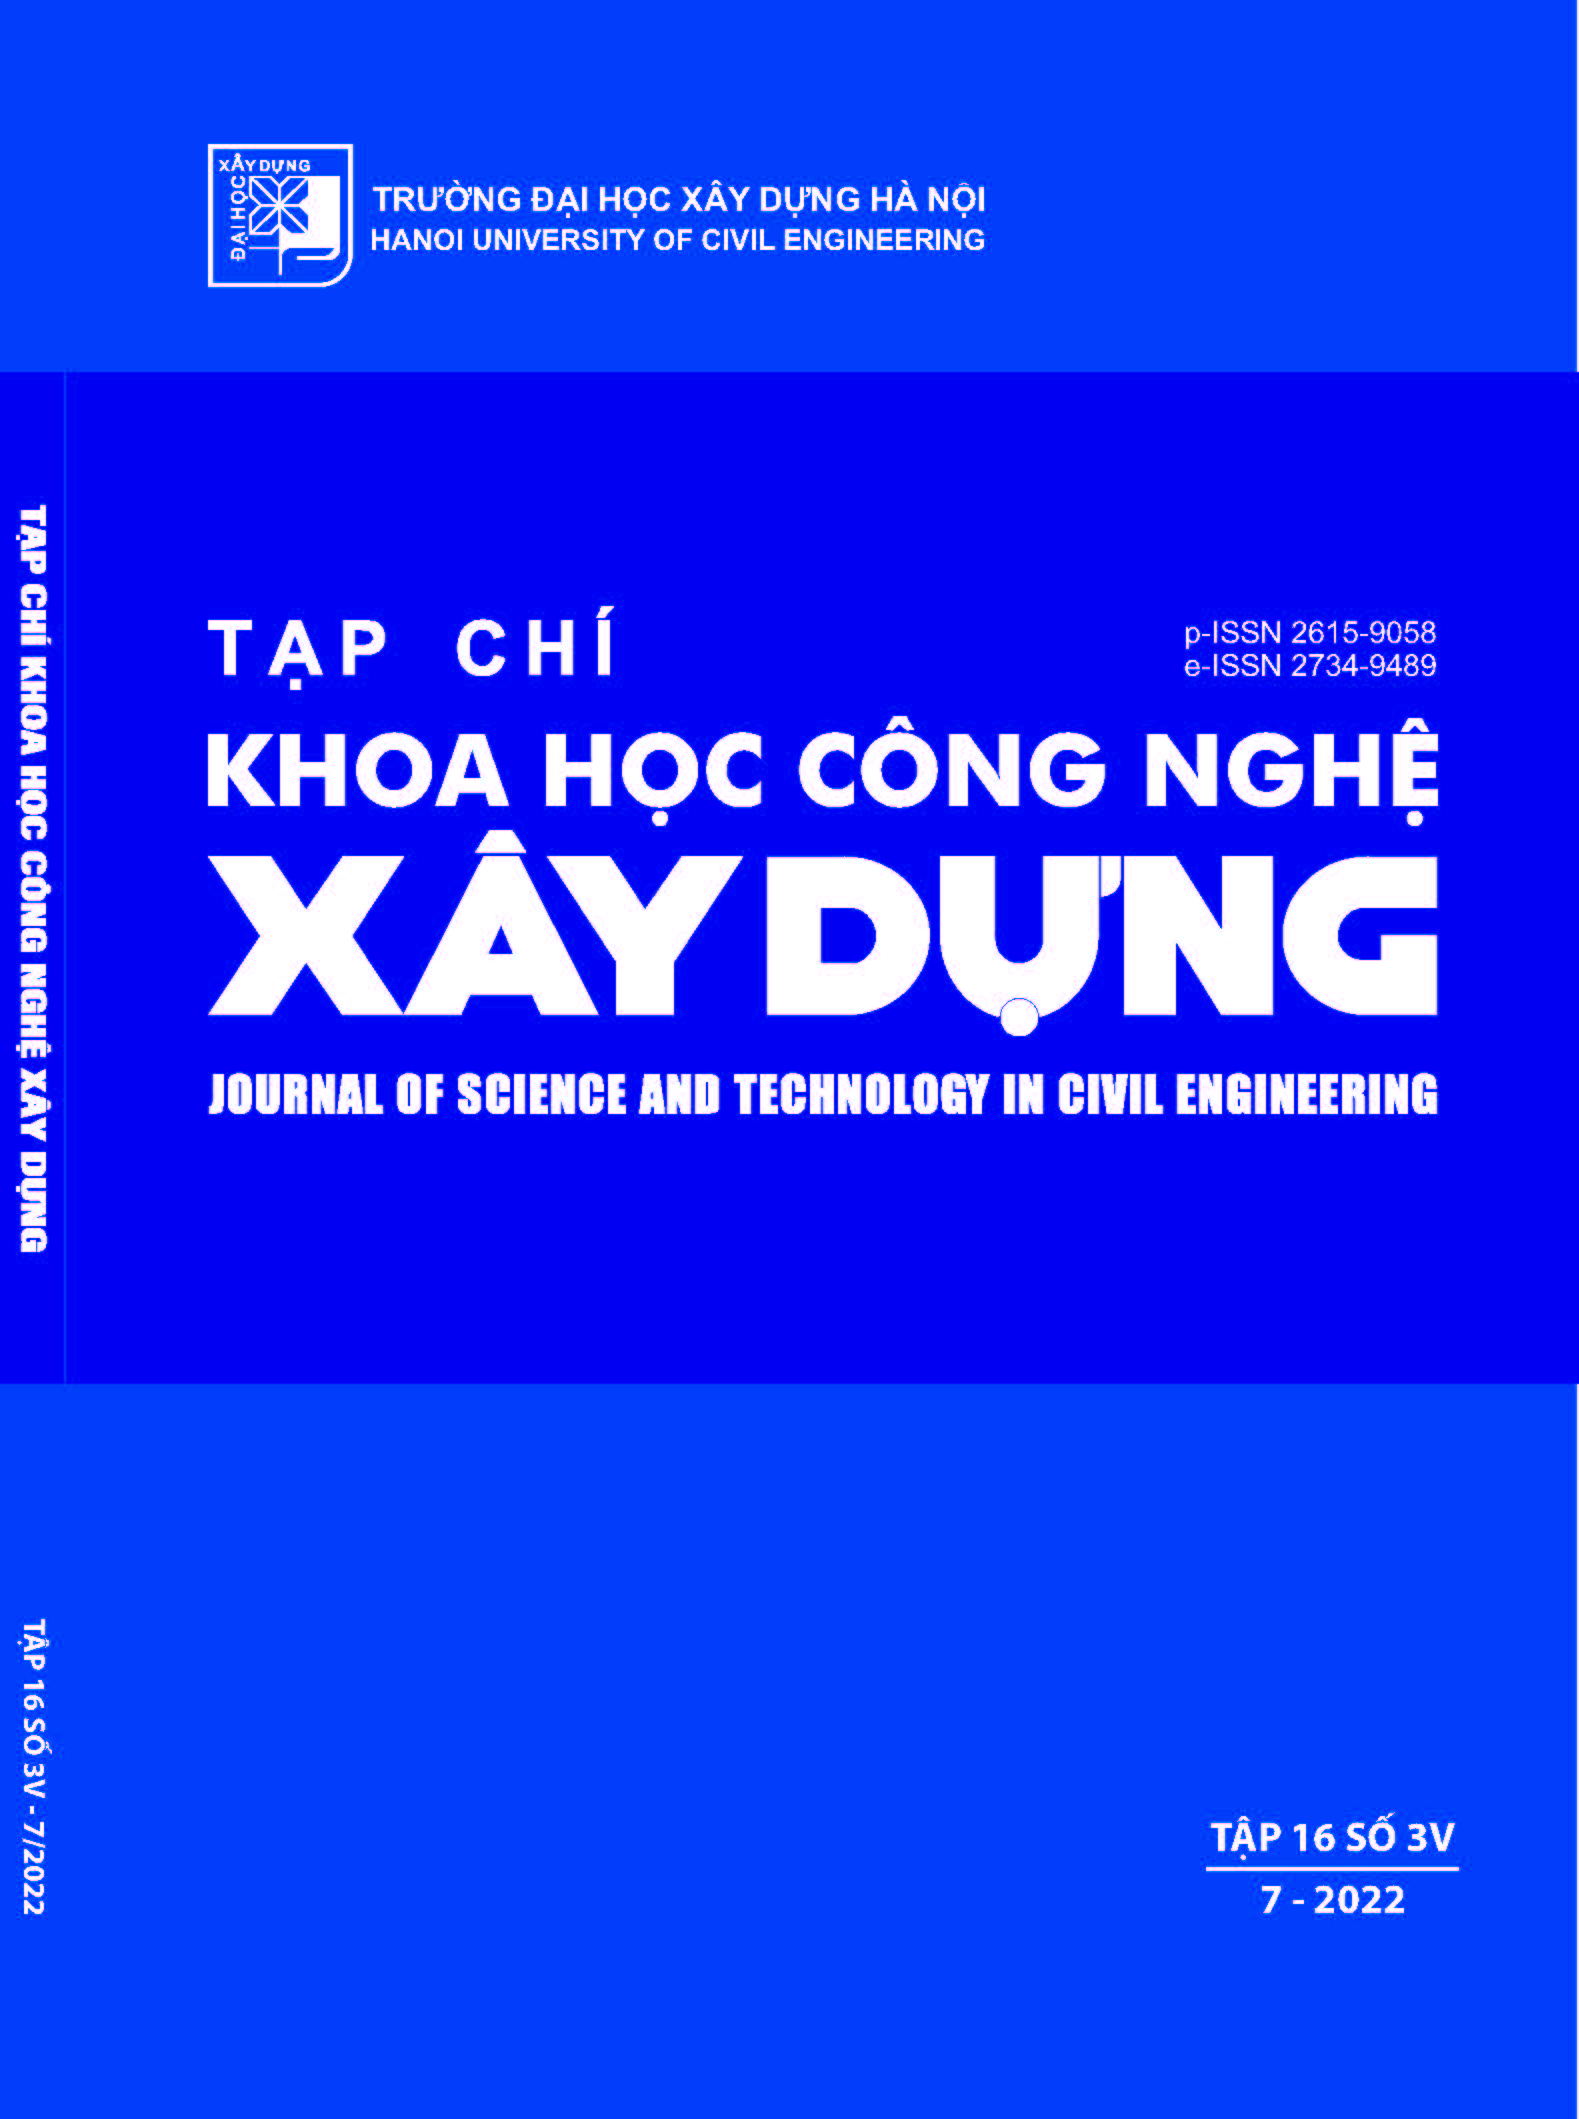 Đánh giá tác động của Công nghệ 4.0 đến doanh nghiệp Xây dựng trên địa bàn Thành phố Hồ Chí Minh | Tạp chí Khoa học Công nghệ Xây dựng (KHCNXD) - ĐHXDHN